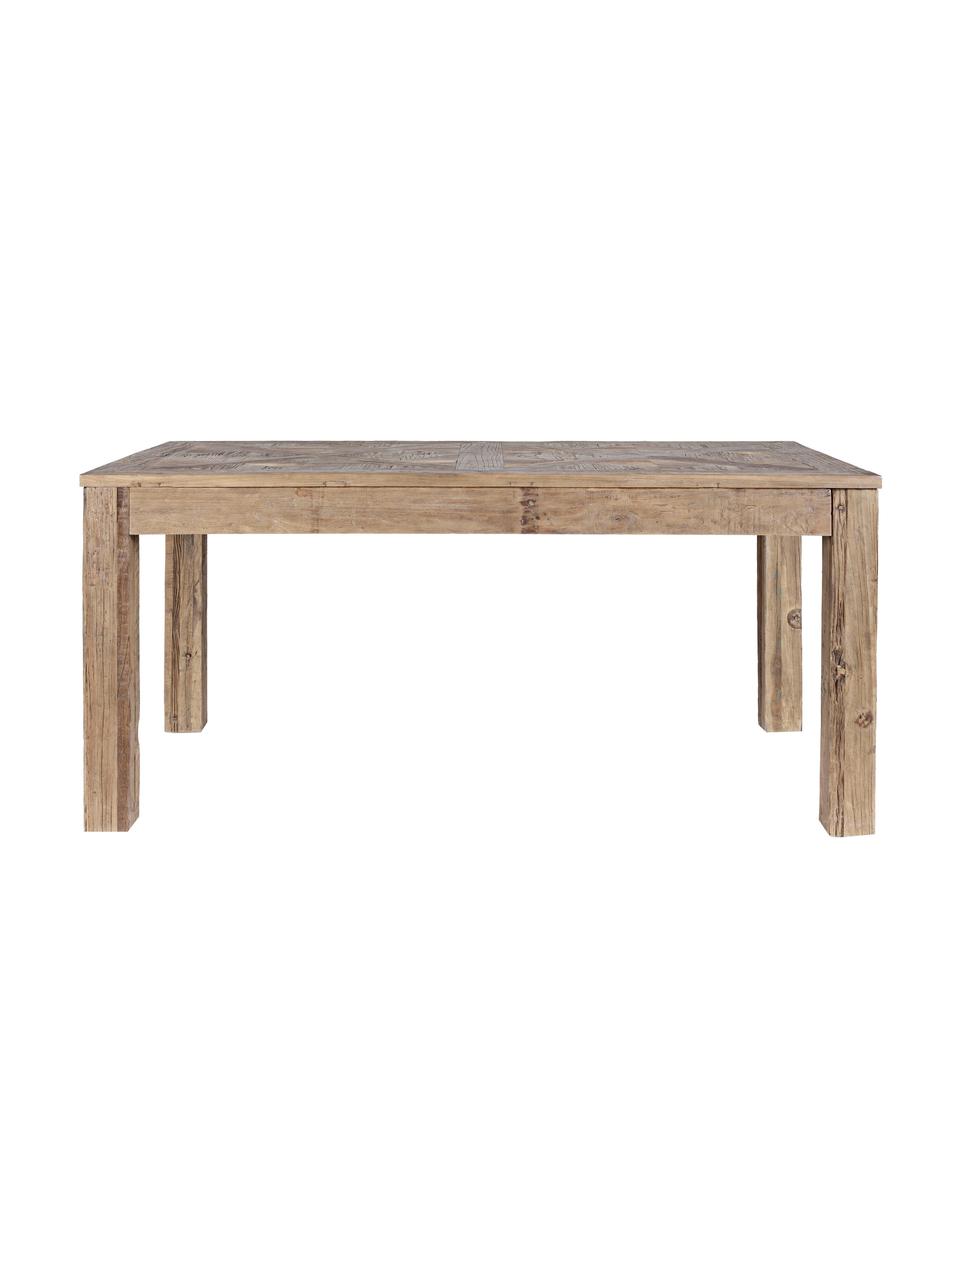 Stół do jadalni z drewna Kaily, Drewno wiązowe z recyklingu z antycznym wykończeniem, Beżowy, S 160 x G 90 cm